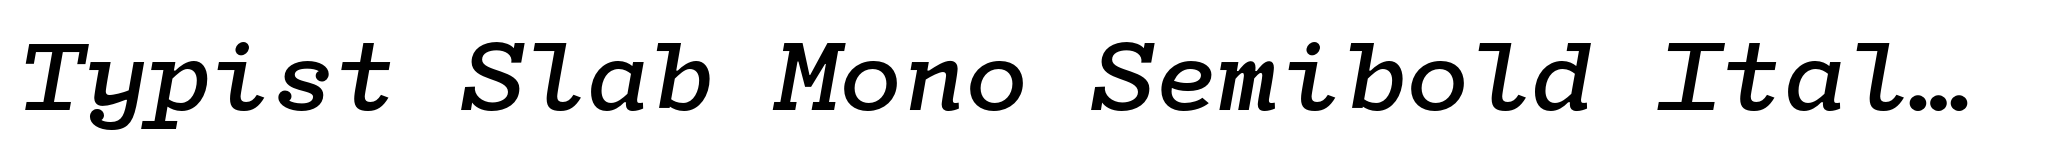 Typist Slab Mono Semibold Italic image